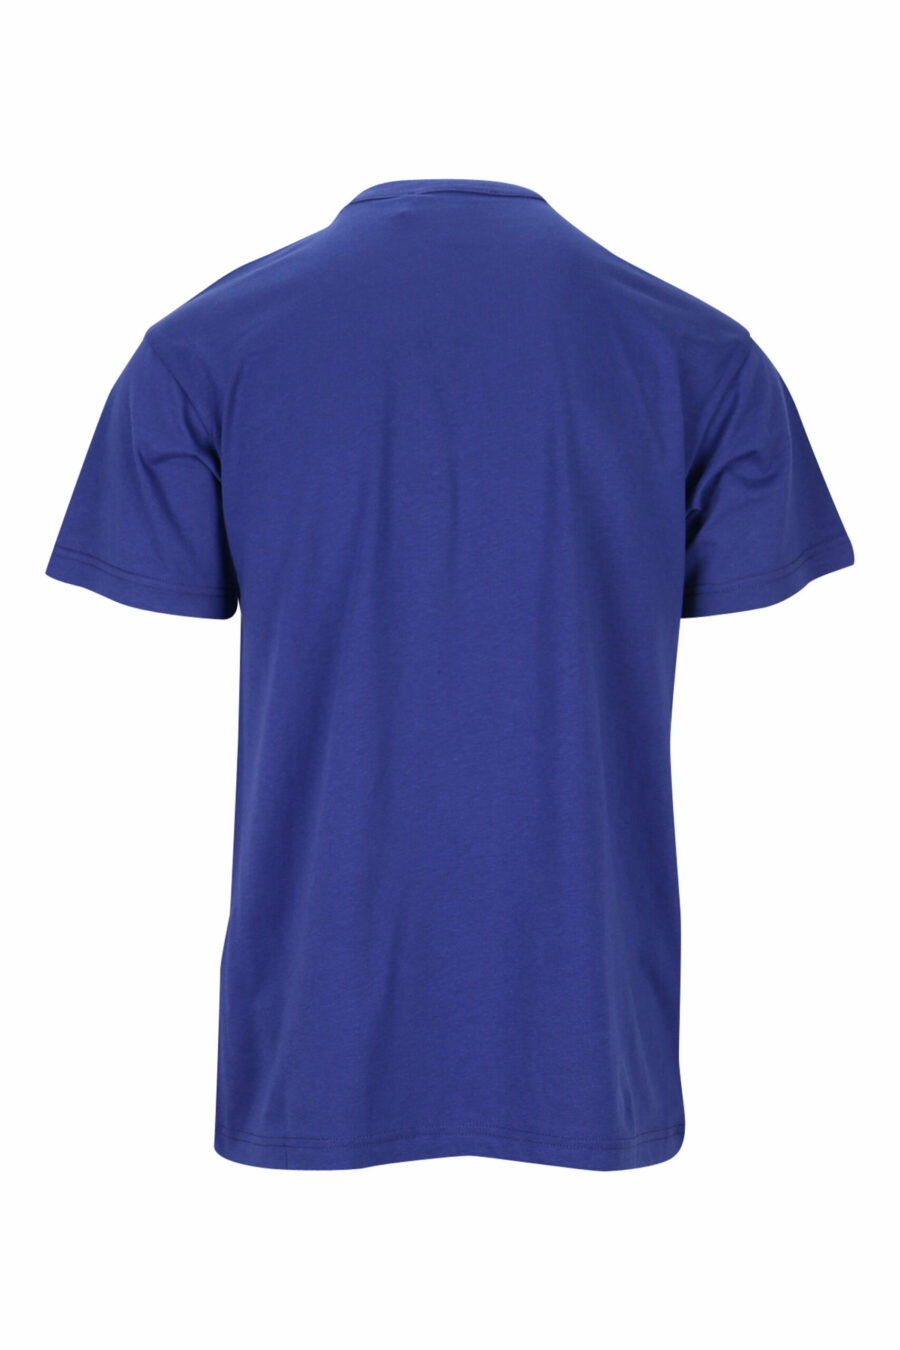 T-shirt azul-marinho com maxilogue azul clássico - 8052019468175 1 scaled